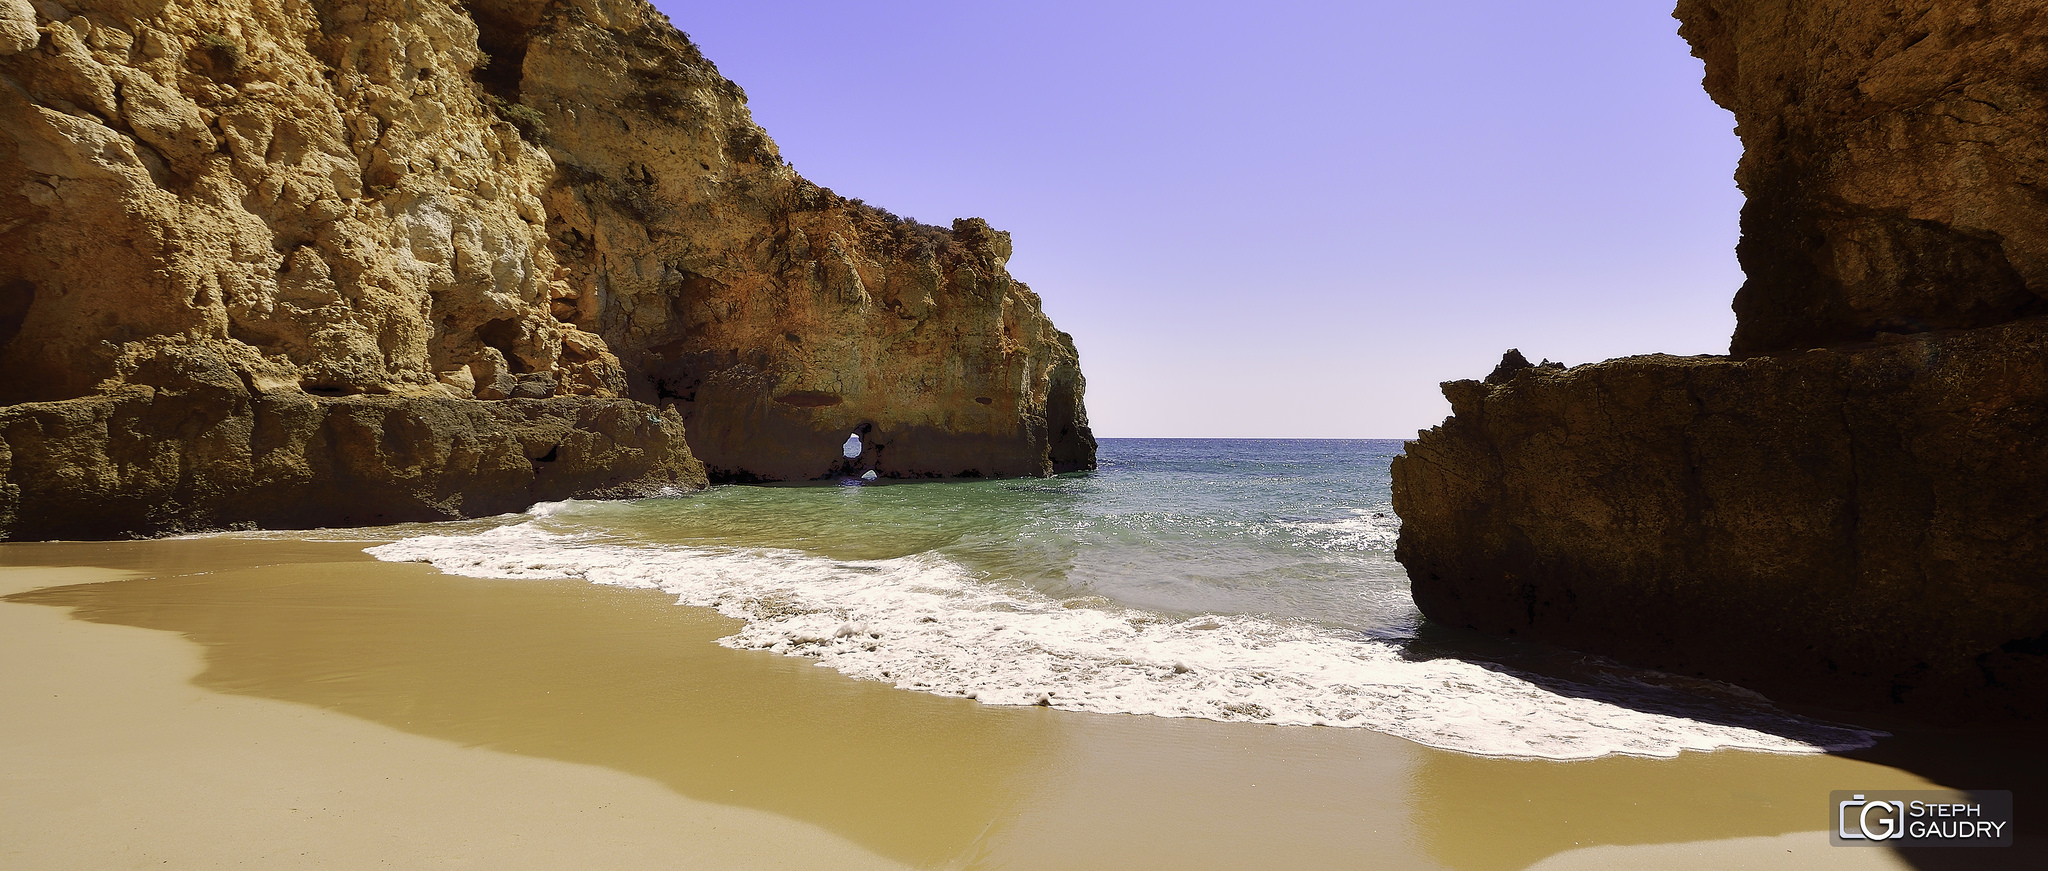 As praias de sonho do Algarve [Klicken Sie hier, um die Diashow zu starten]